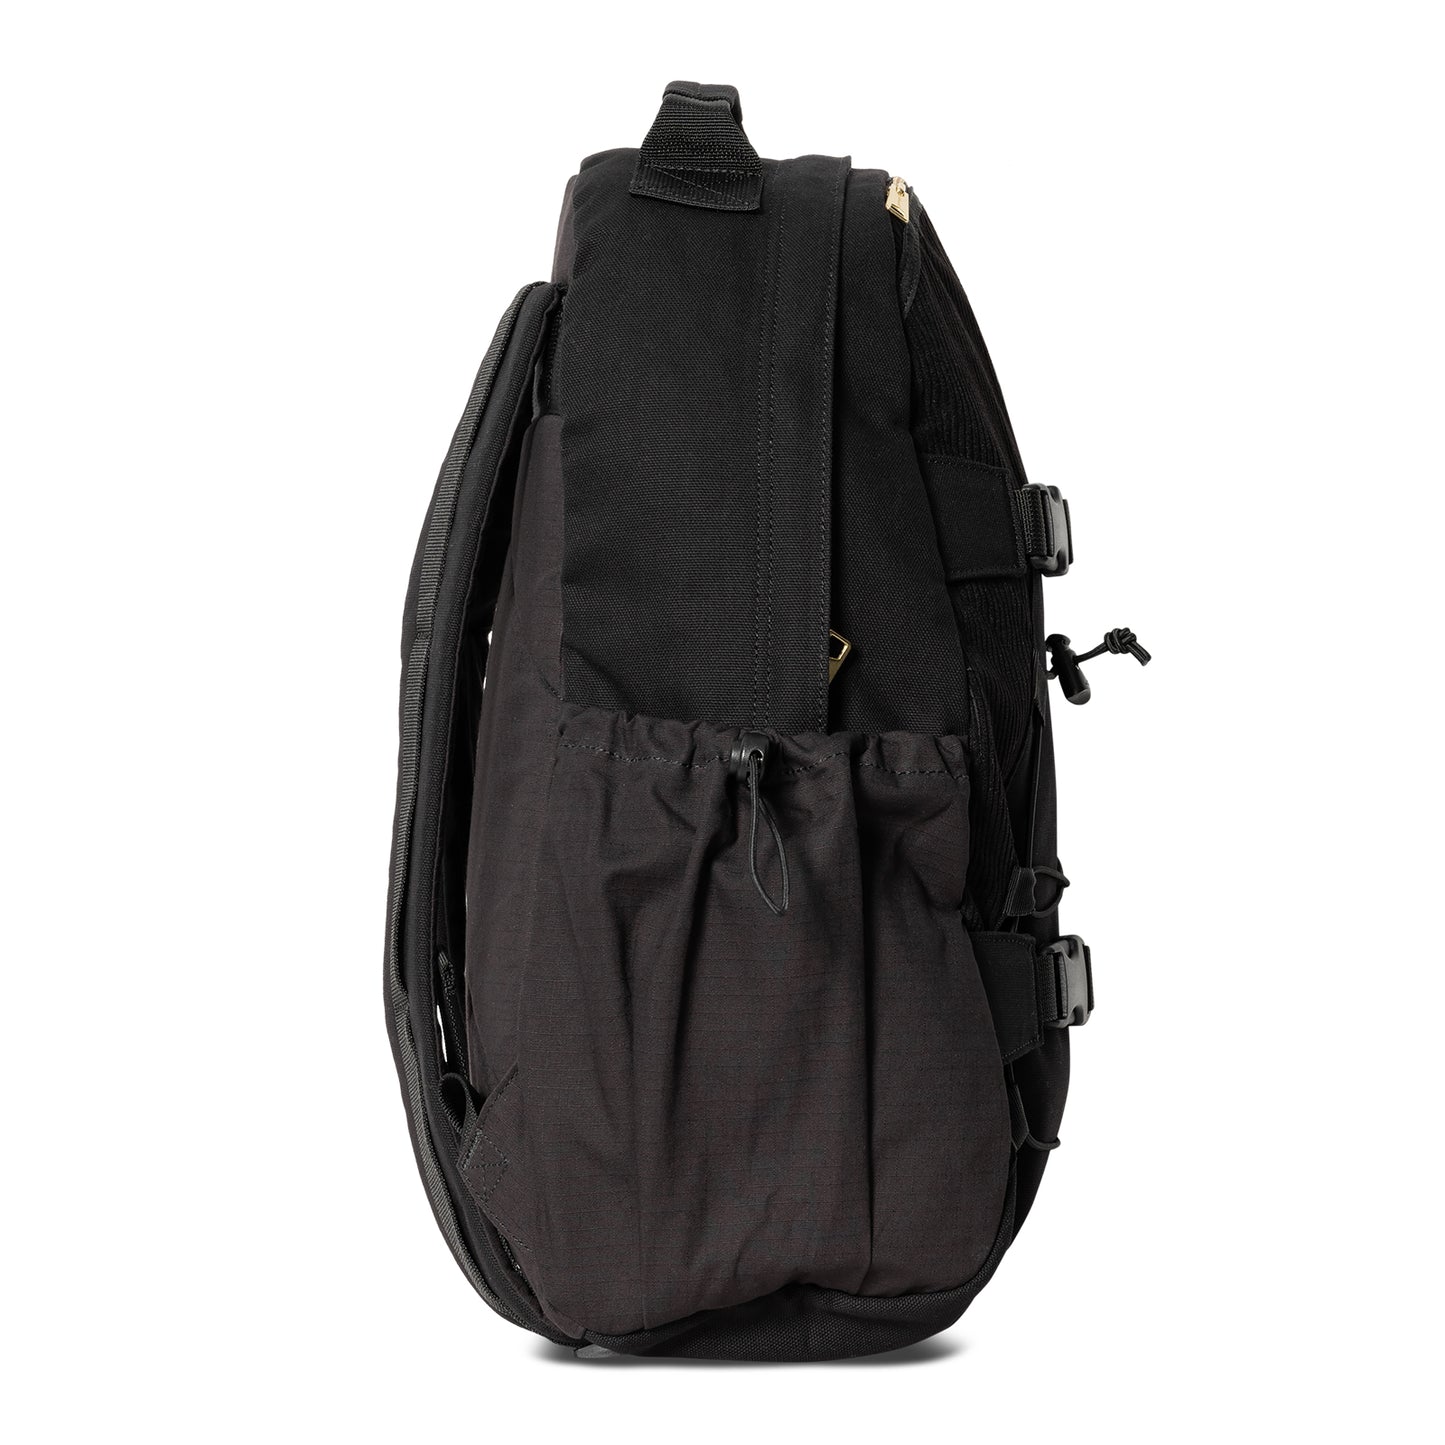 Carhartt WIP Medley Backpack Black. Foto do lado direito.